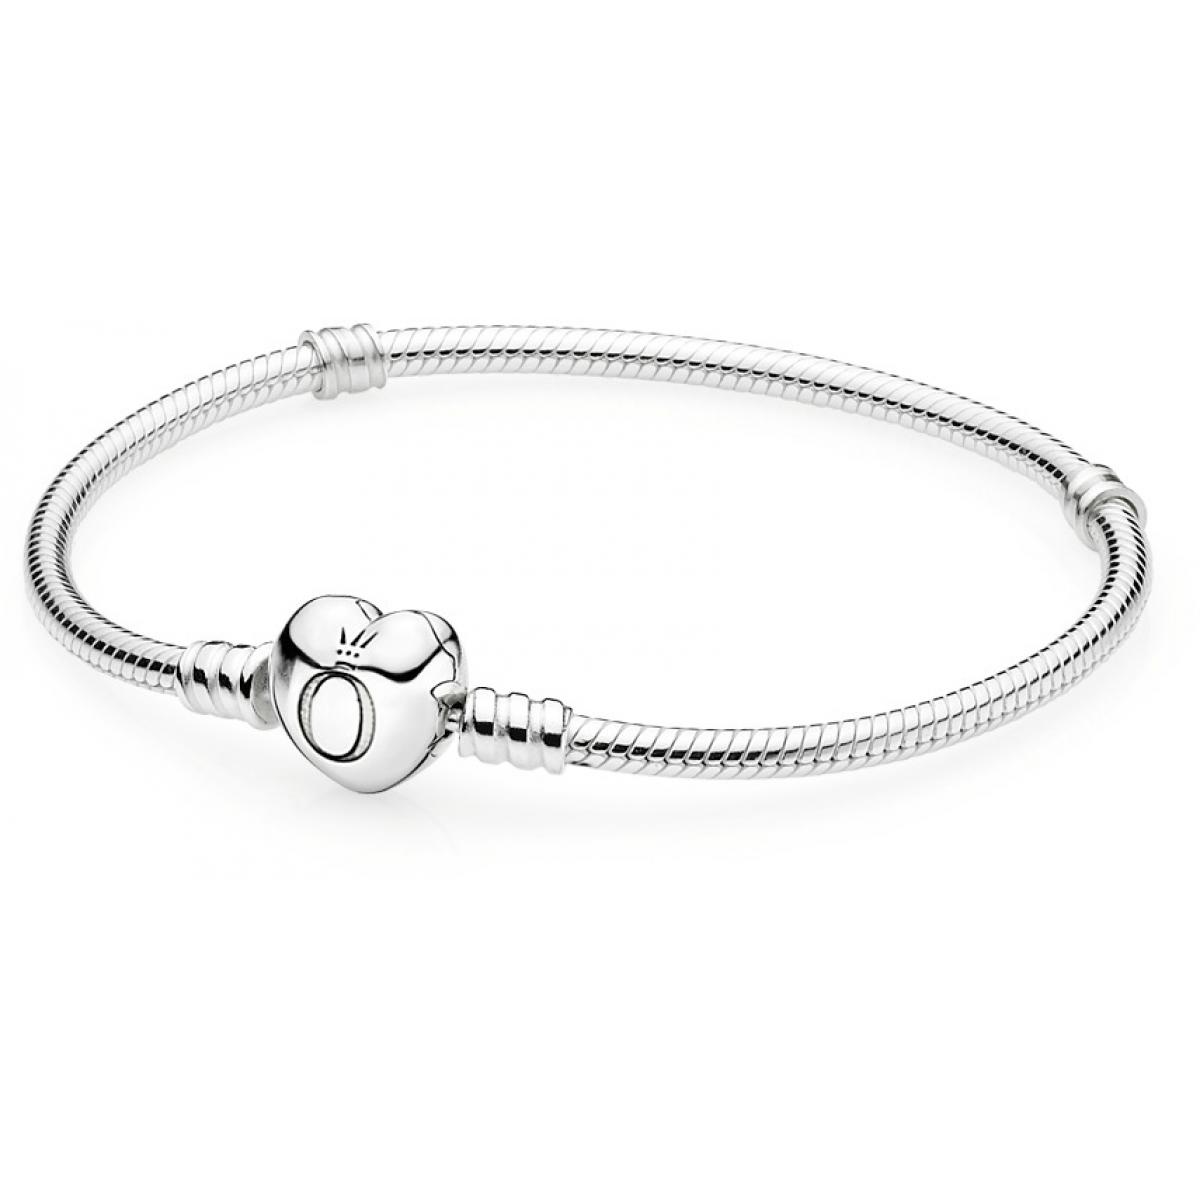 Bracelet Pandora Moments de vie 590719 - Bracelet Coeur Argent Femme